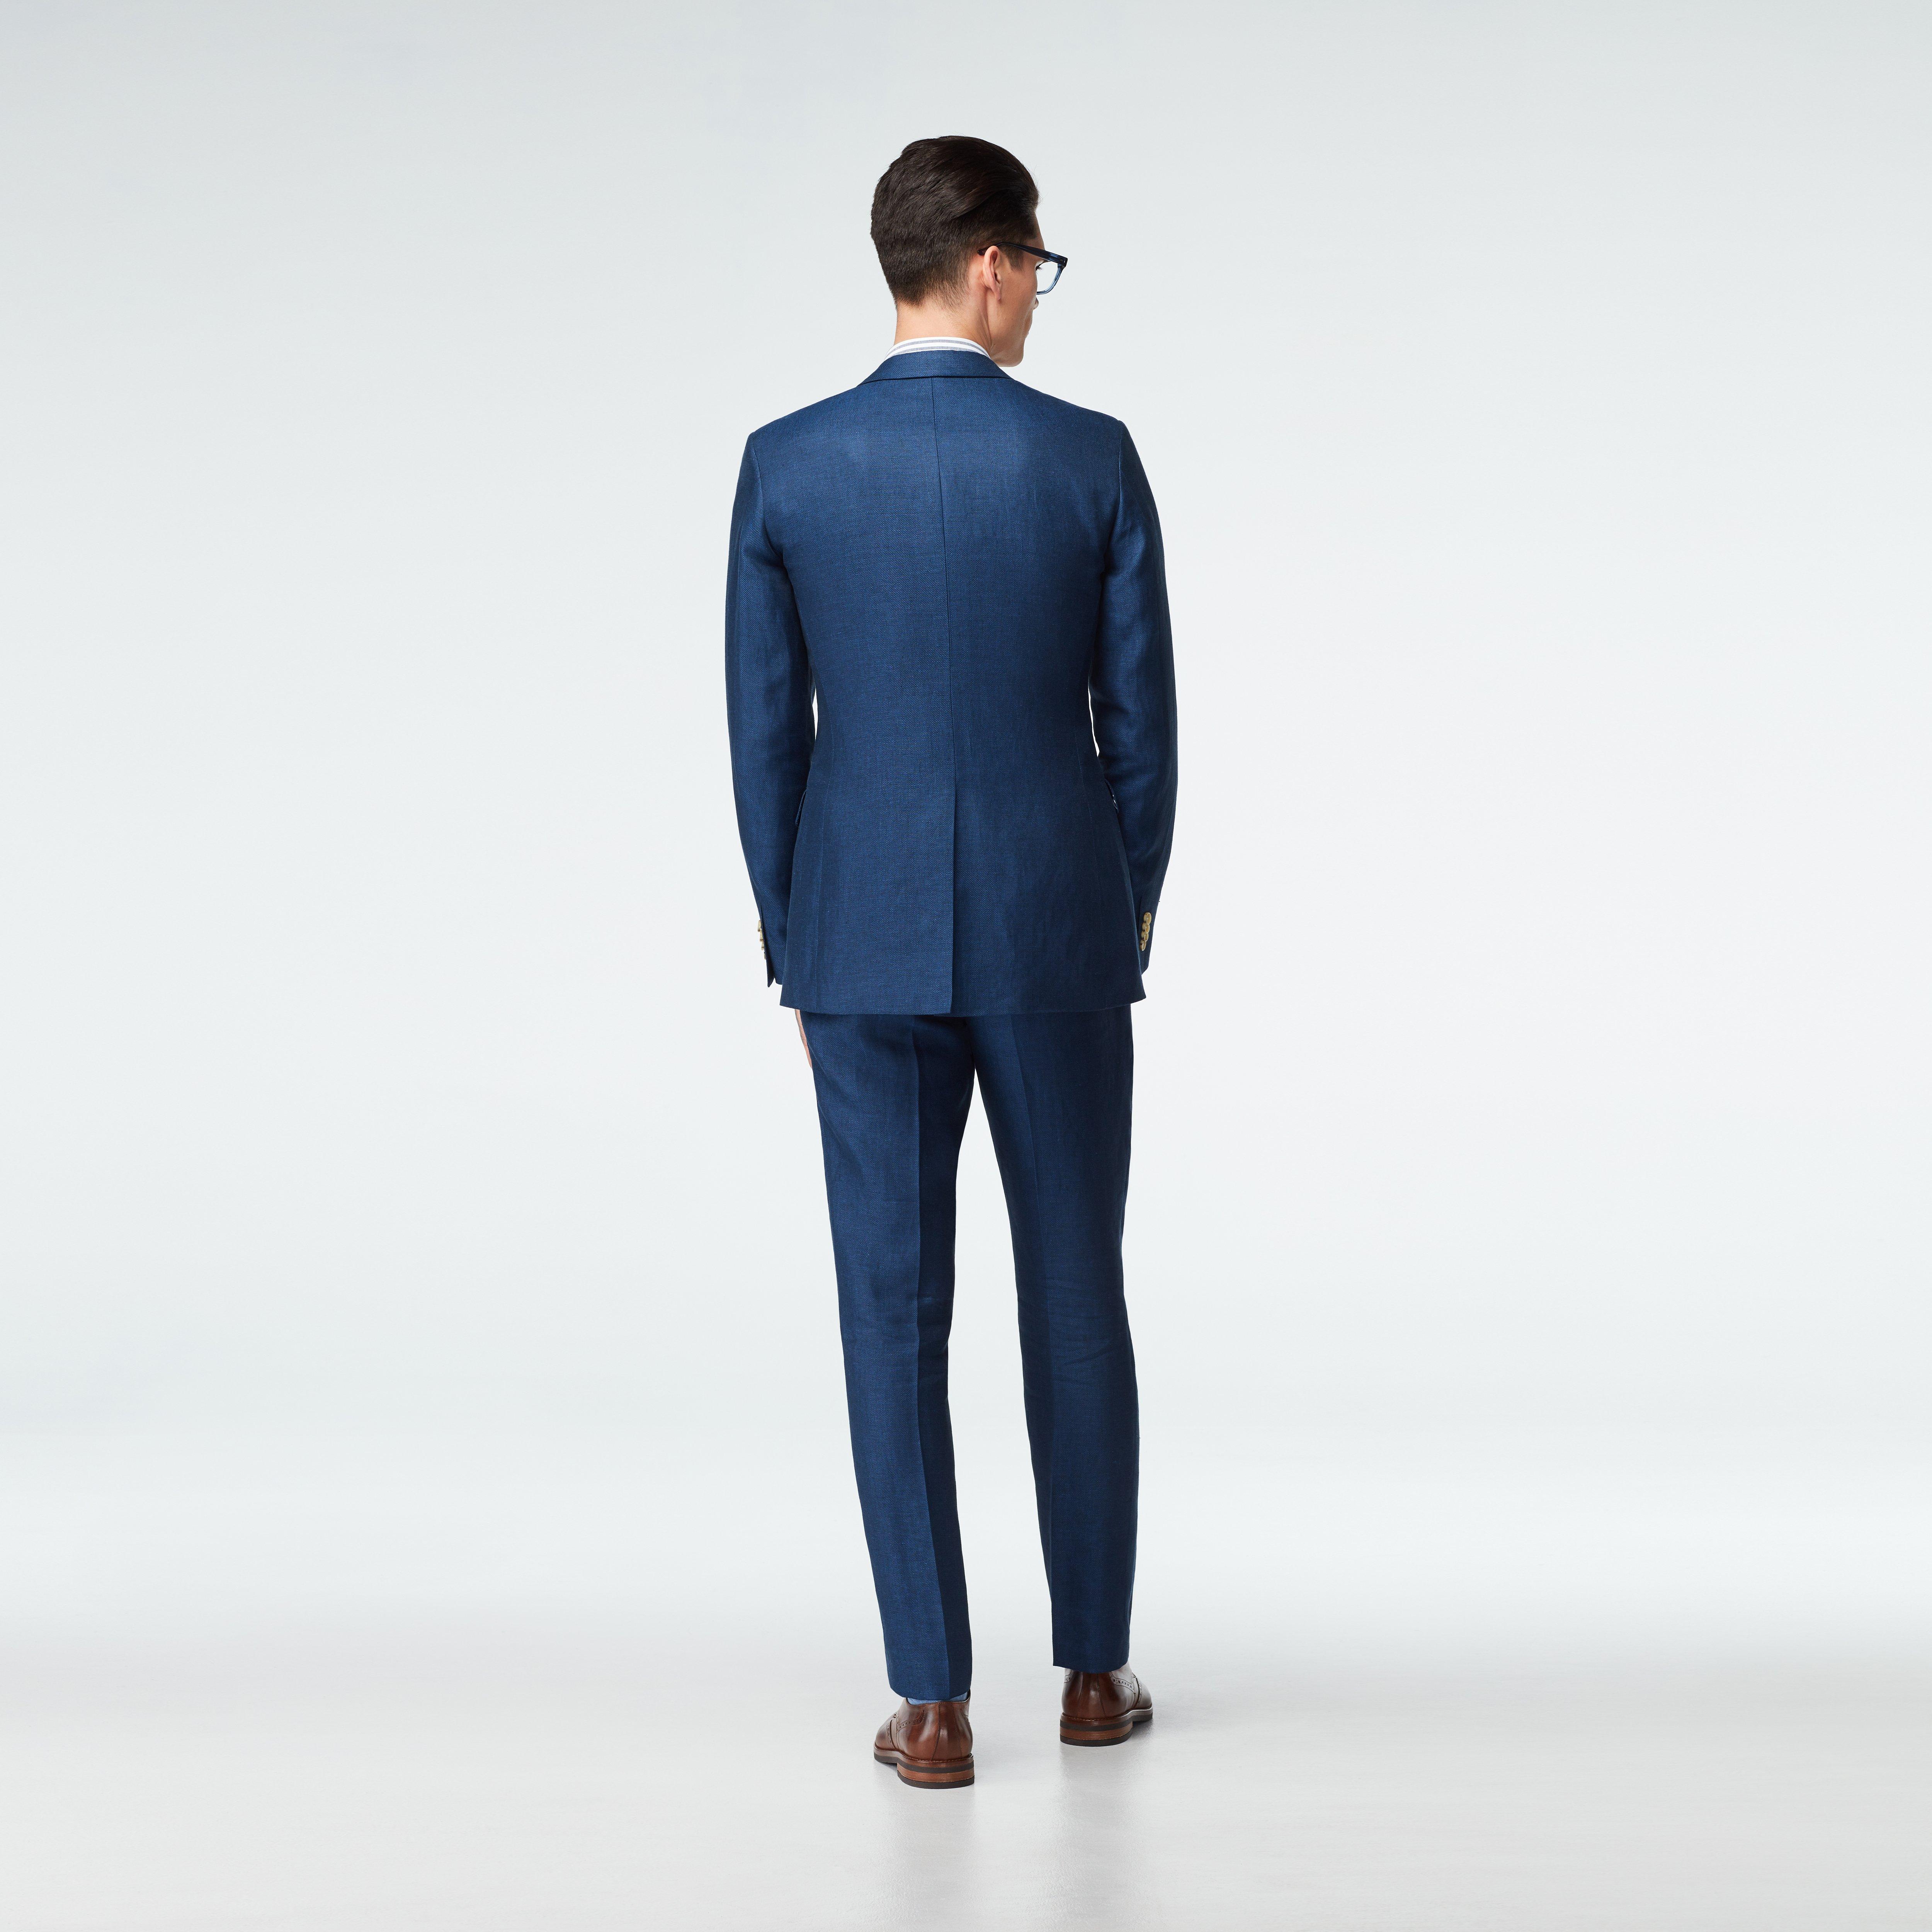 Sailsbury Linen Blue Suit (e0199244faf6f262e70e1c0306e7b7df)